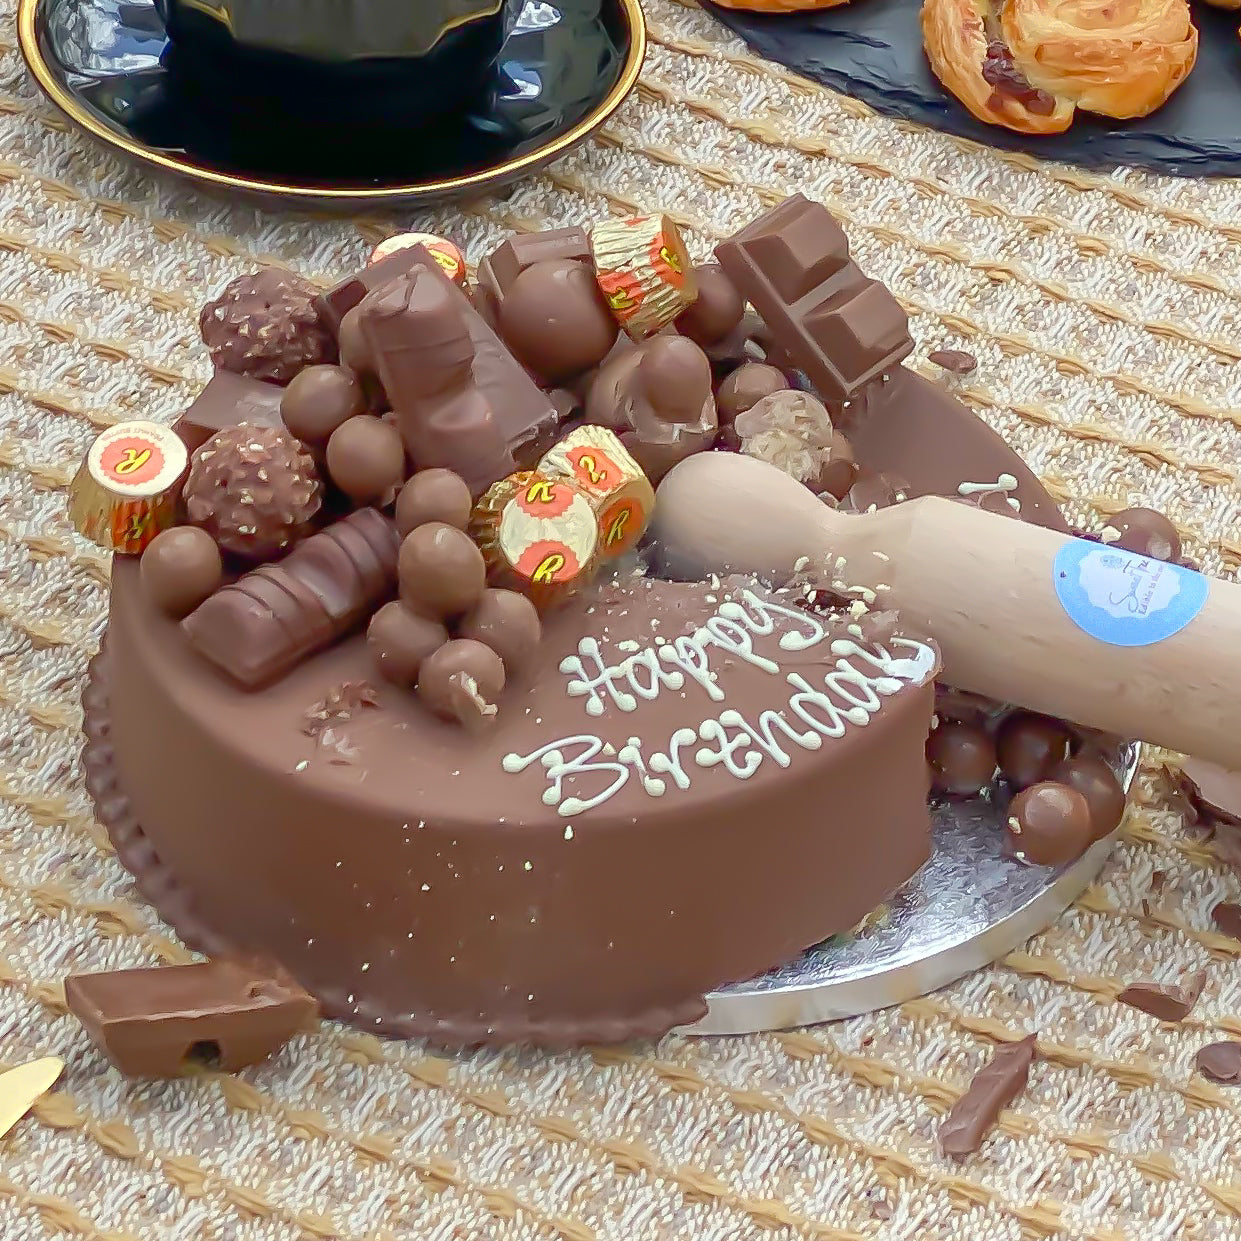 Personalised Chocoholic Smash Cake